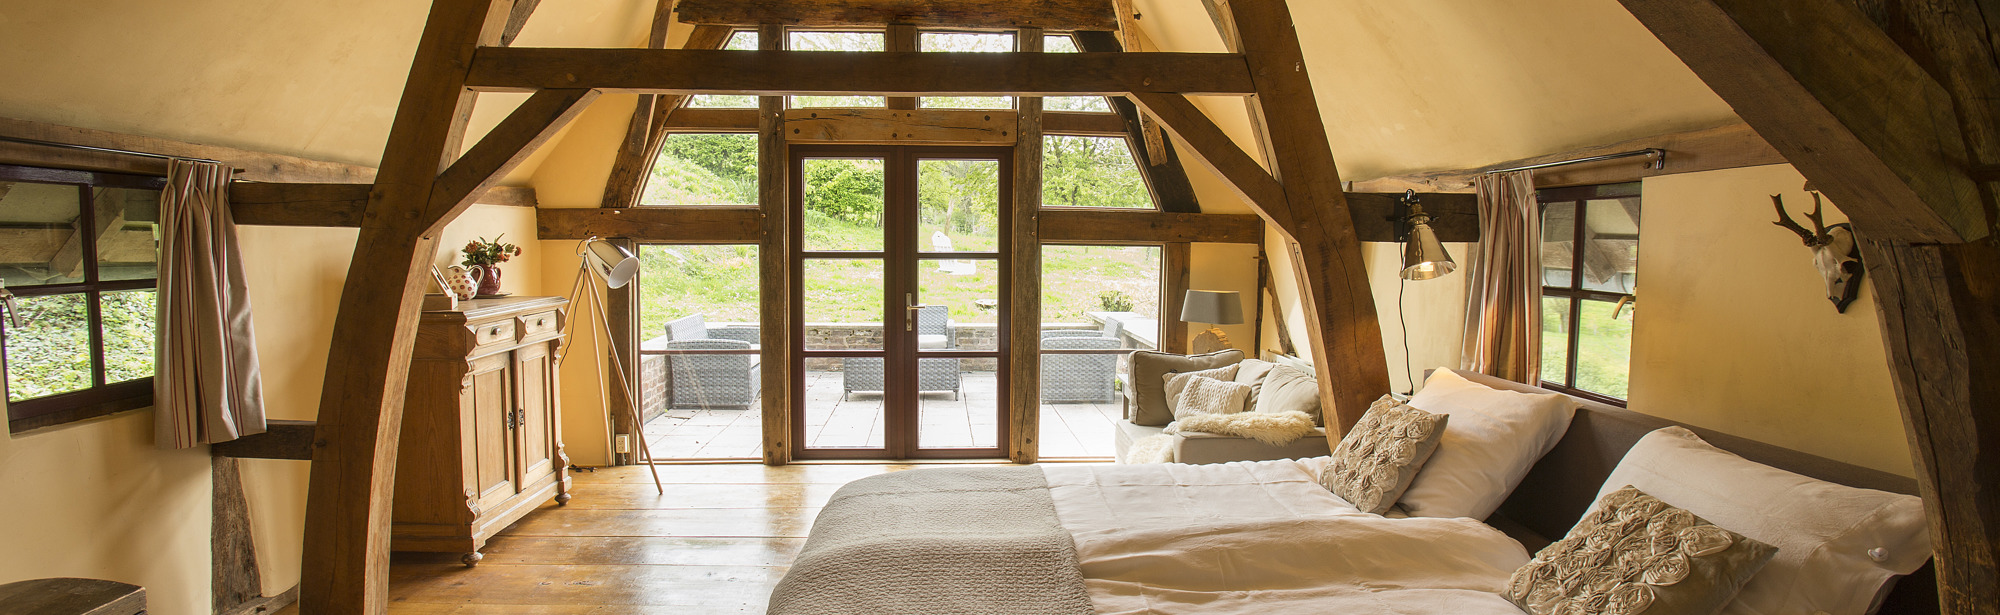 Sfeervolle slaapkamer onder een schuin dak met houten balken. 